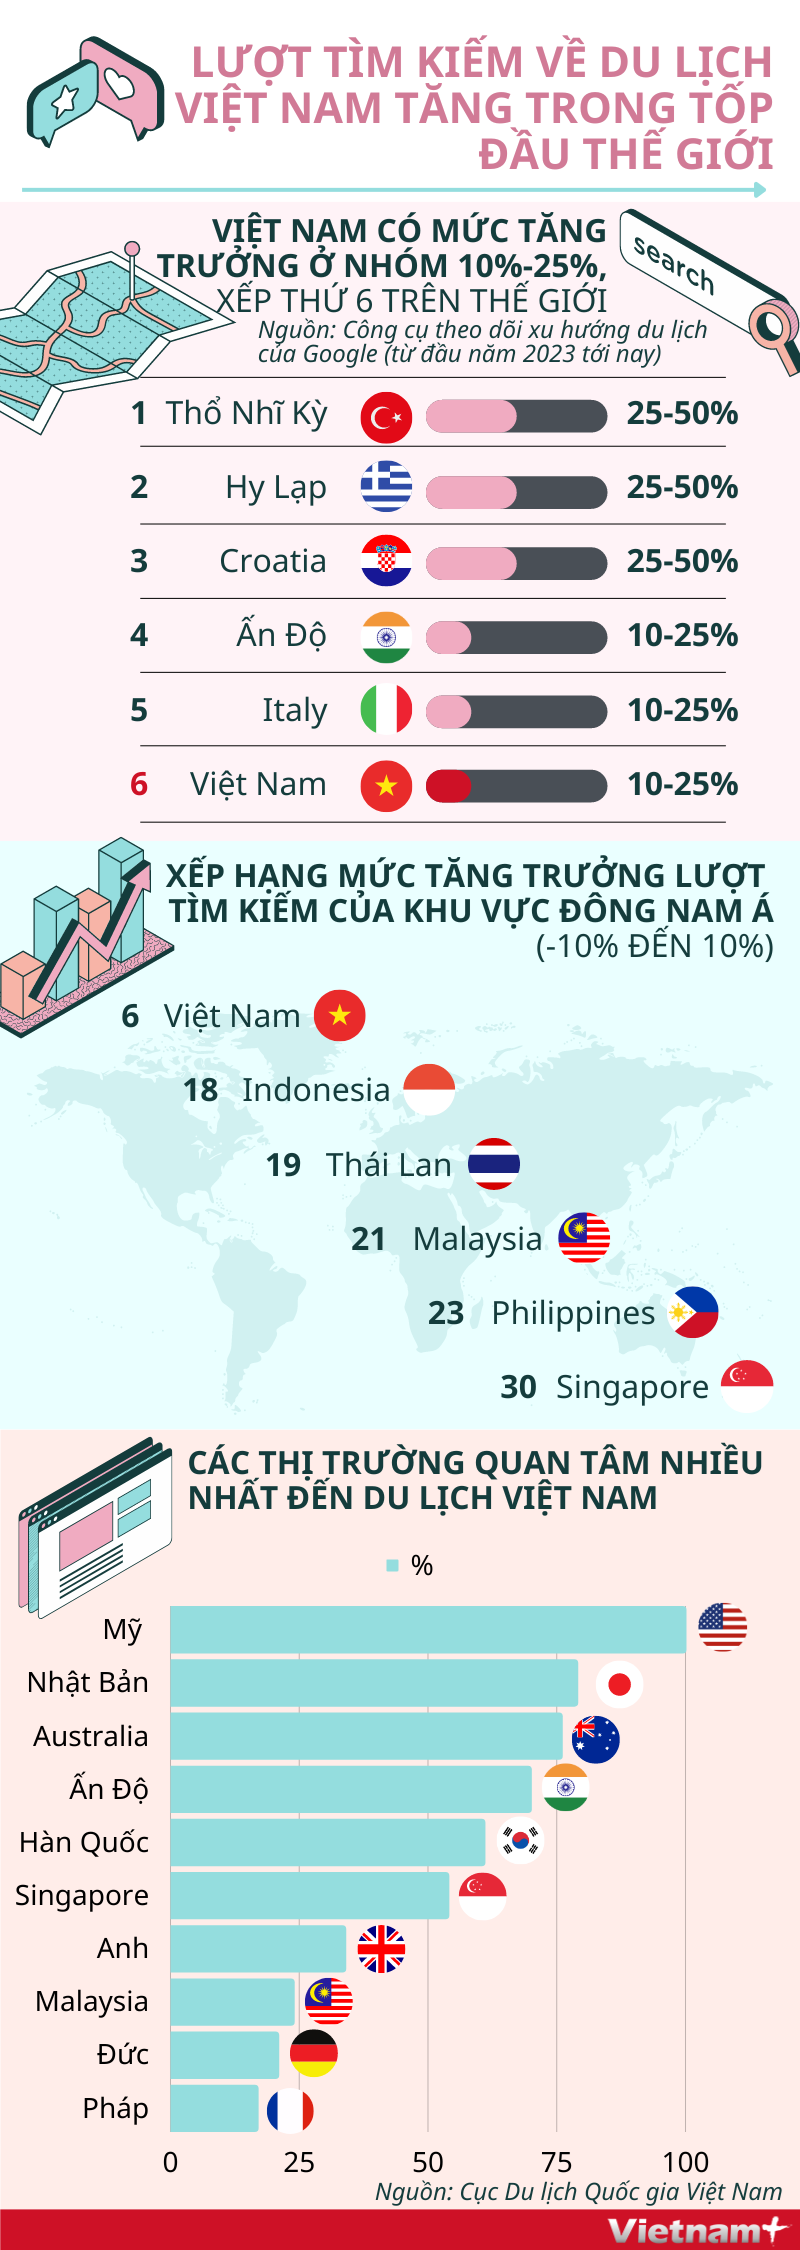 Lượt tìm kiếm về du lịch Việt Nam tăng trong top đầu thế giới